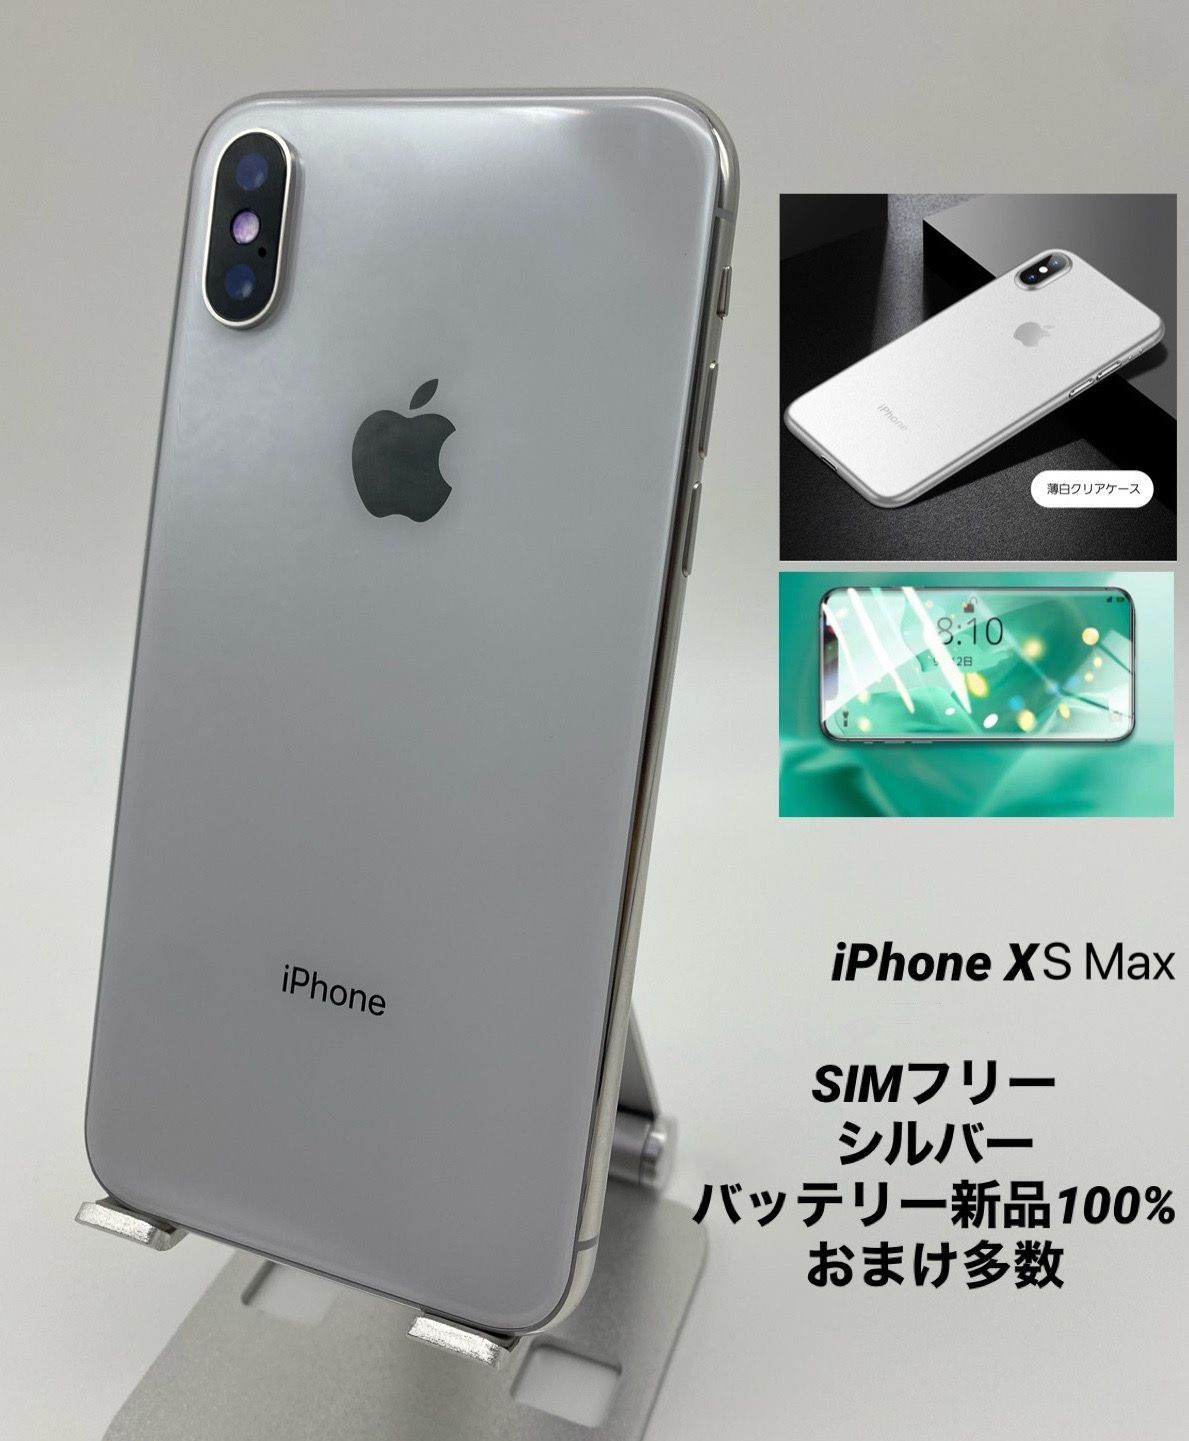 iPhoneXS Max 512GB シルバー/シムフリー/新品純正バッテリー100%/新品 